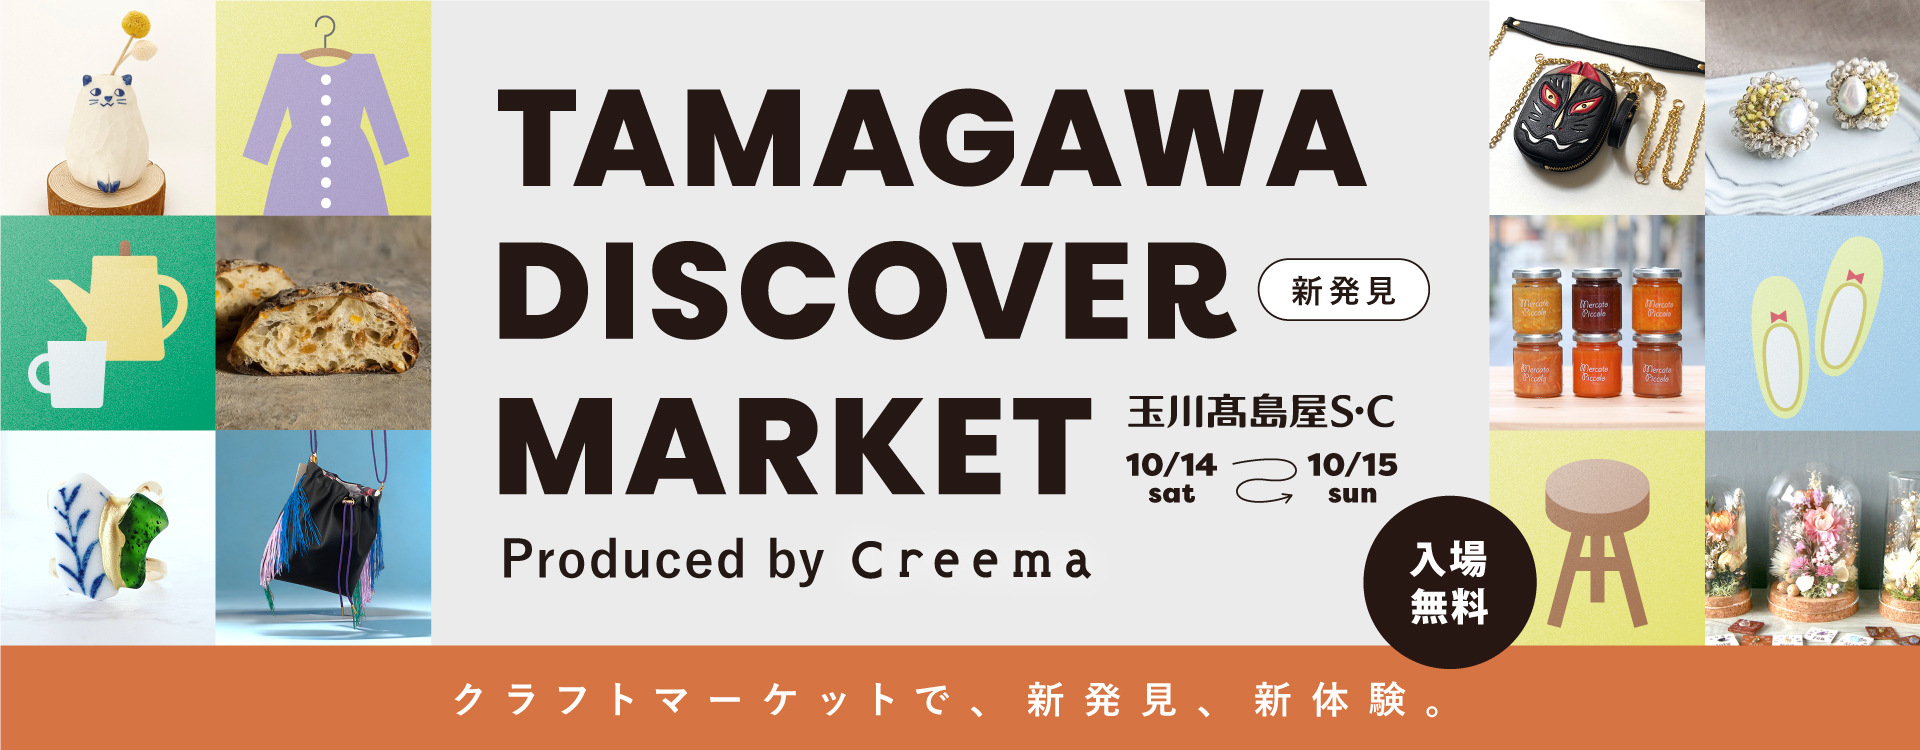 TAMAGAWA DISCOVER MARKET produced Creema